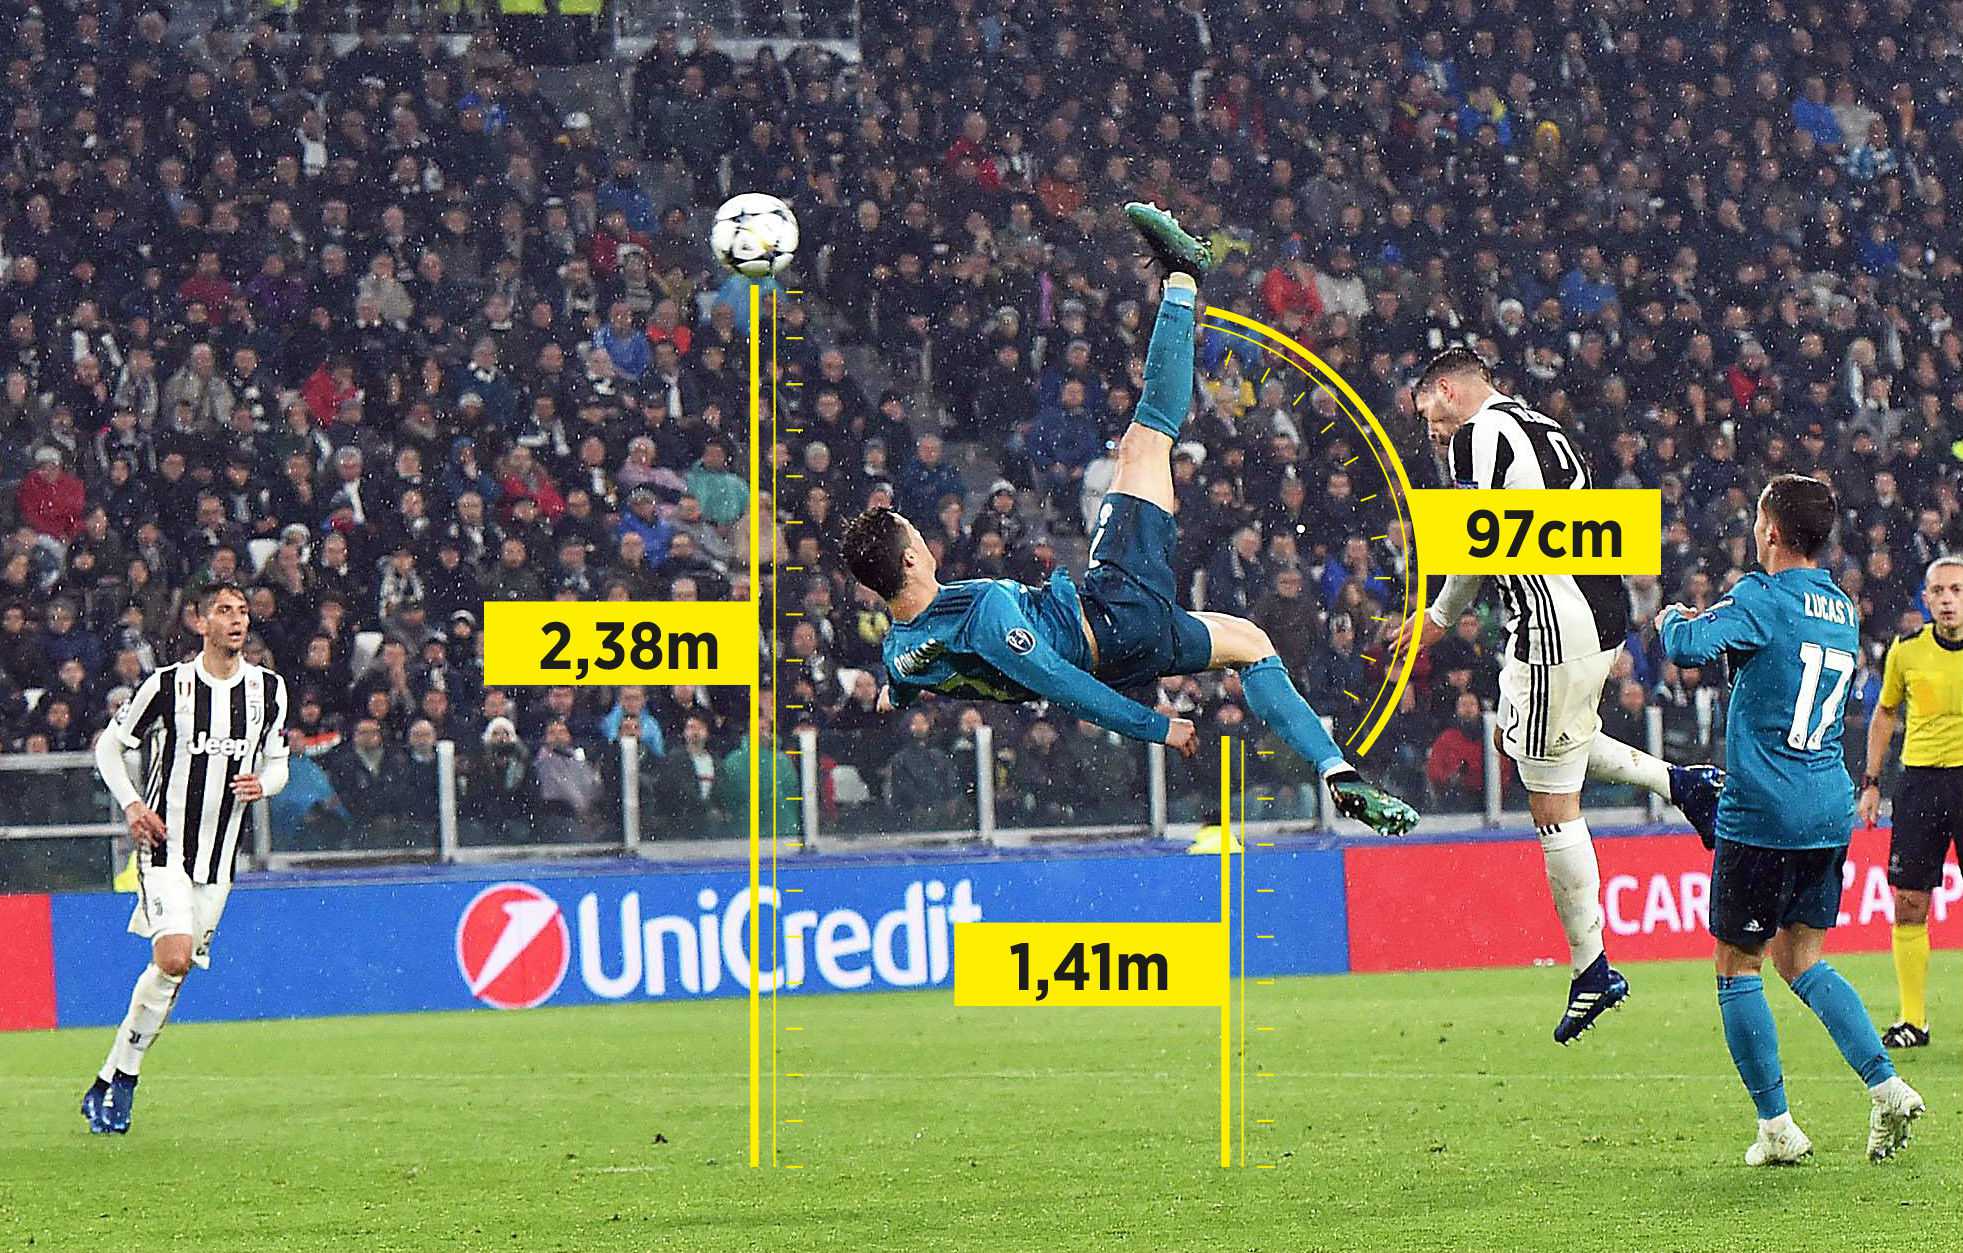 Los datos físicos del gol de chilena de Cristiano Ronaldo